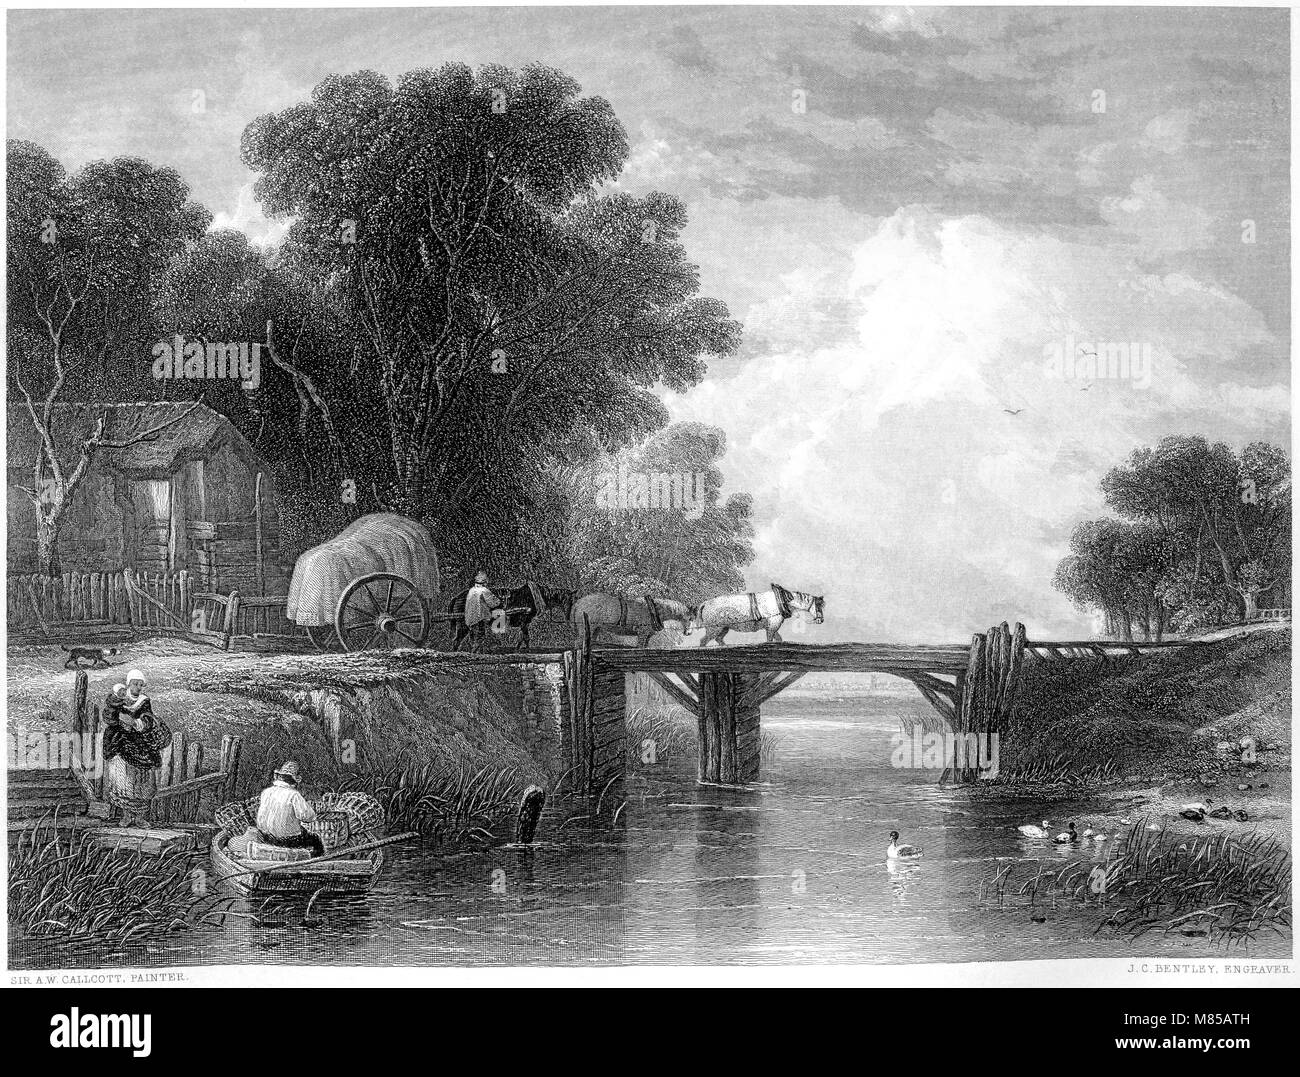 Eine Gravur berechtigt, die hölzerne Brücke aus dem Bild von Sir Augustus Wand Callcott in der Vernon Galerie an der high res aus einem Buch von 1849 gescannt. Stockfoto